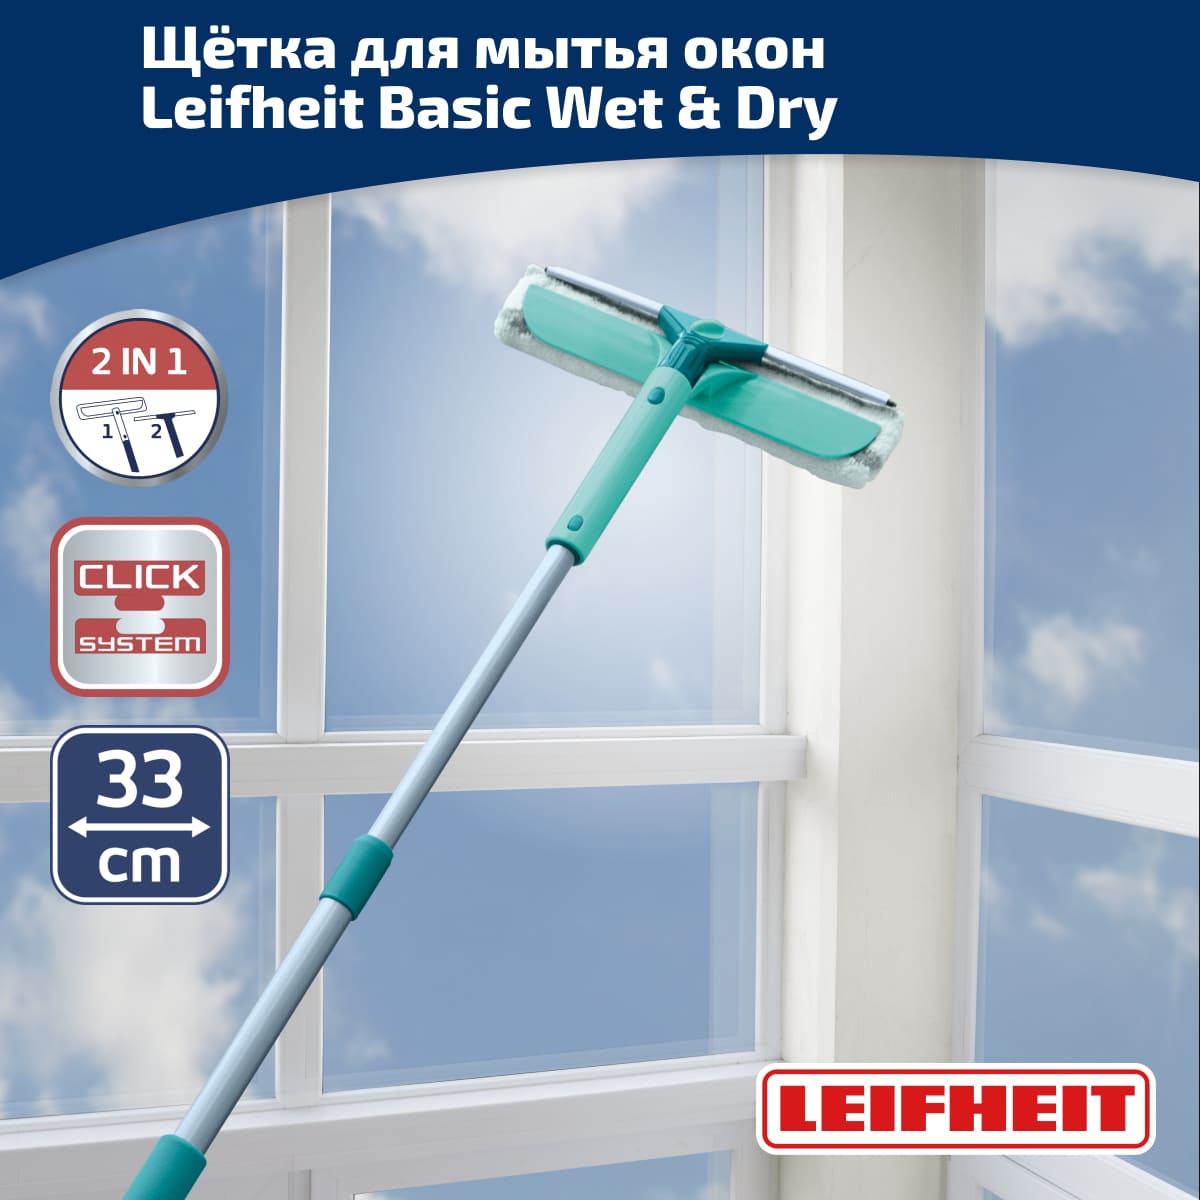 Щётка для мытья окон с губкой и телескопической ручкой, 75-135см, Leifheit Basic Wet & Dry Leifheit 55238, цвет зеленый - фото 1